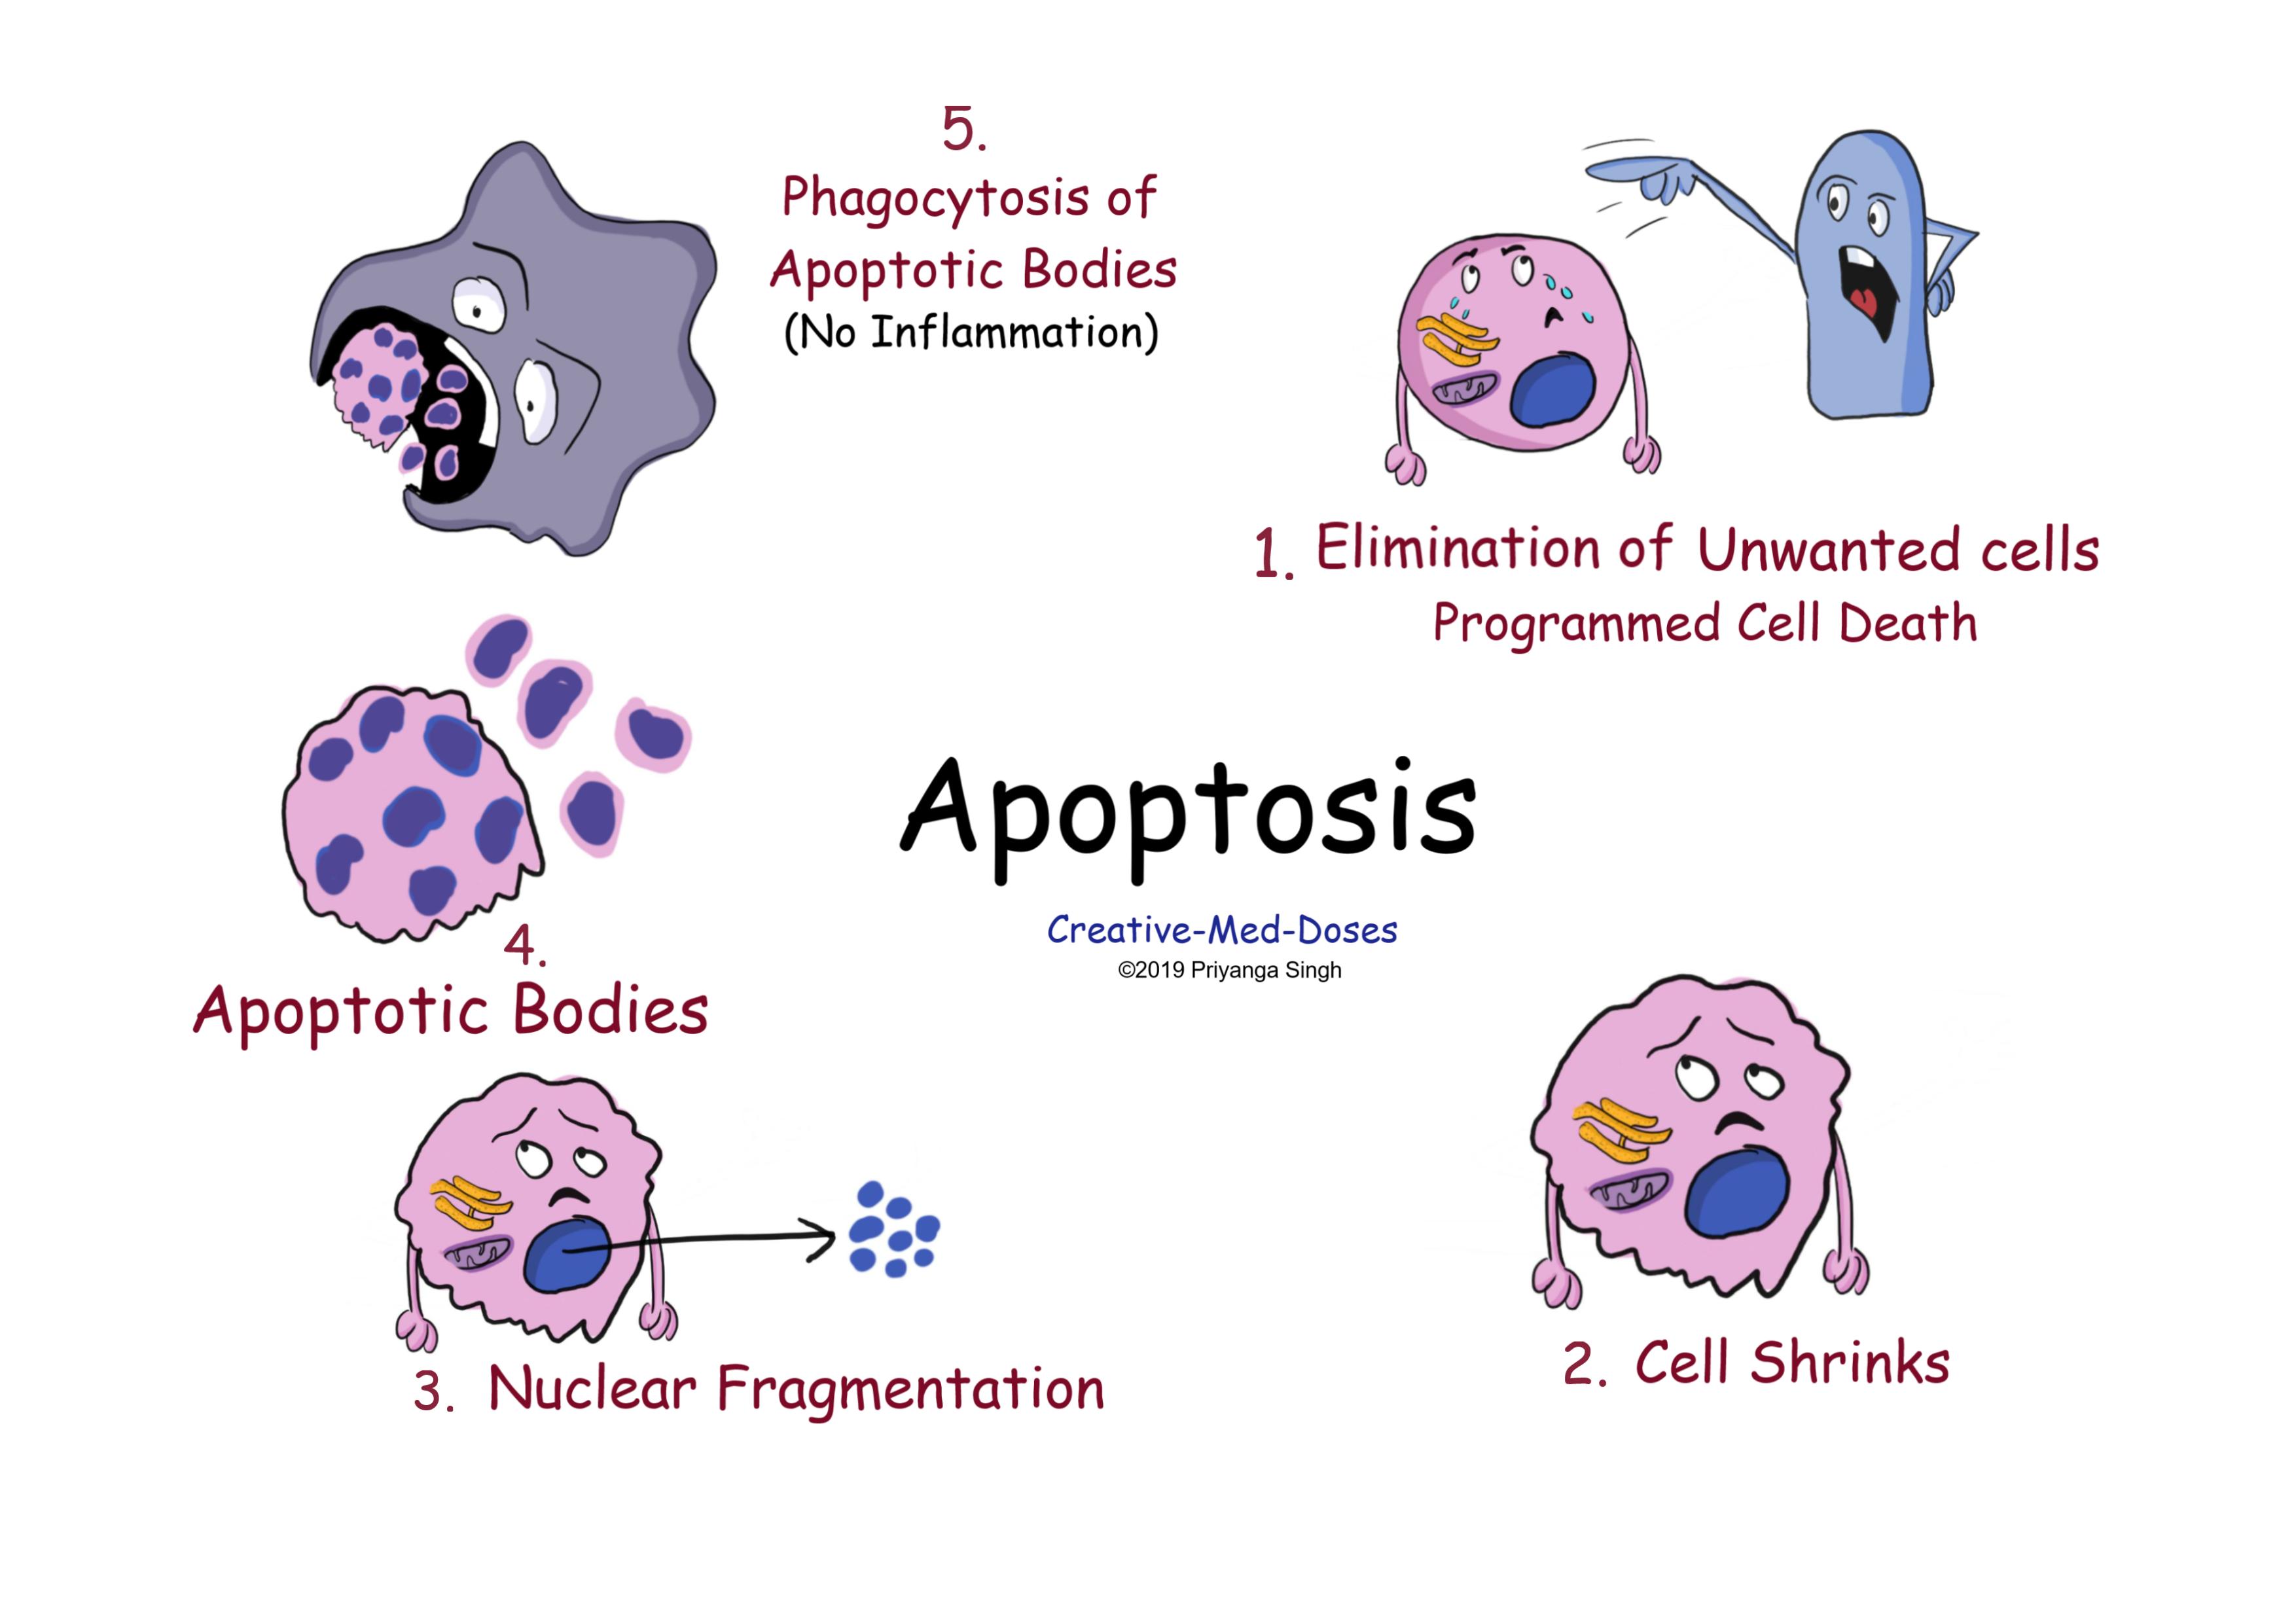 Apoptosis main features
Necrosis VS apoptosis